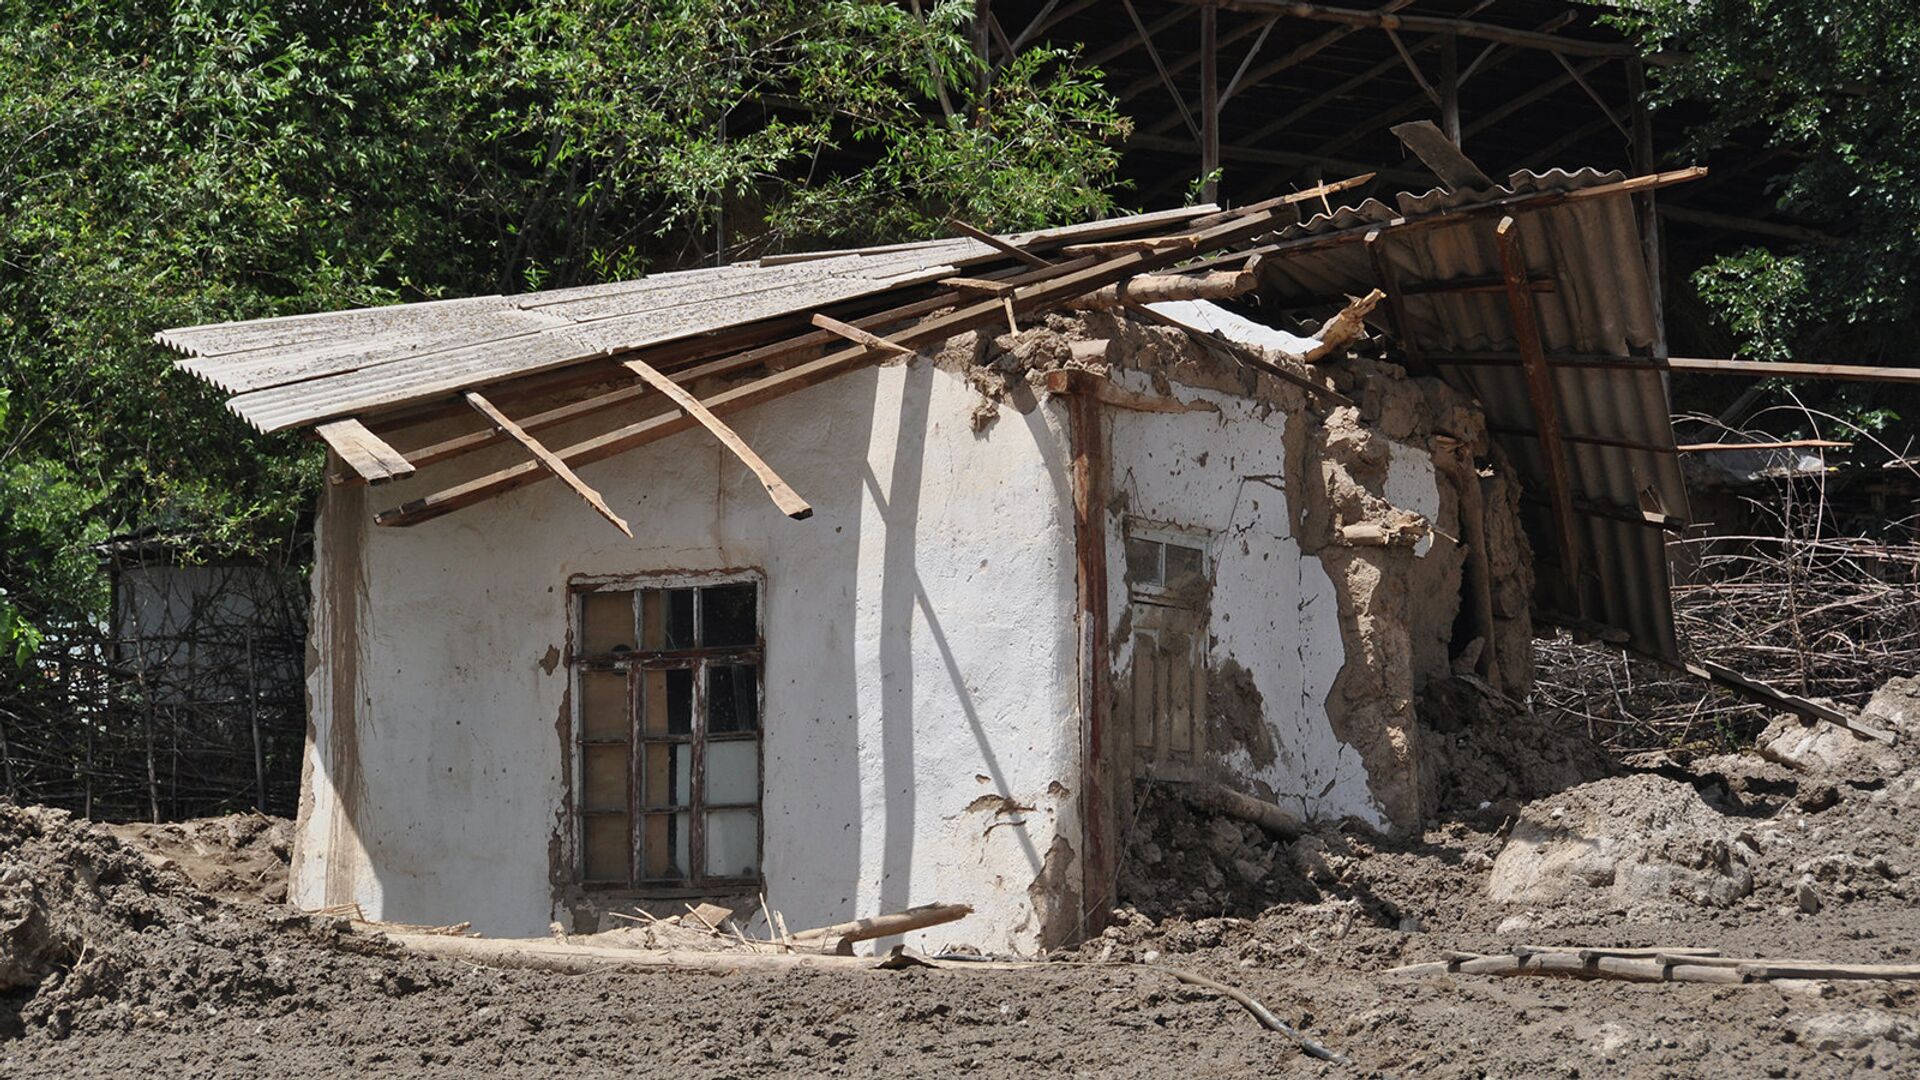 Последствия схода сели в селе Бедак, района Рашт. 22 июля 2015 года - Sputnik Таджикистан, 1920, 11.02.2021